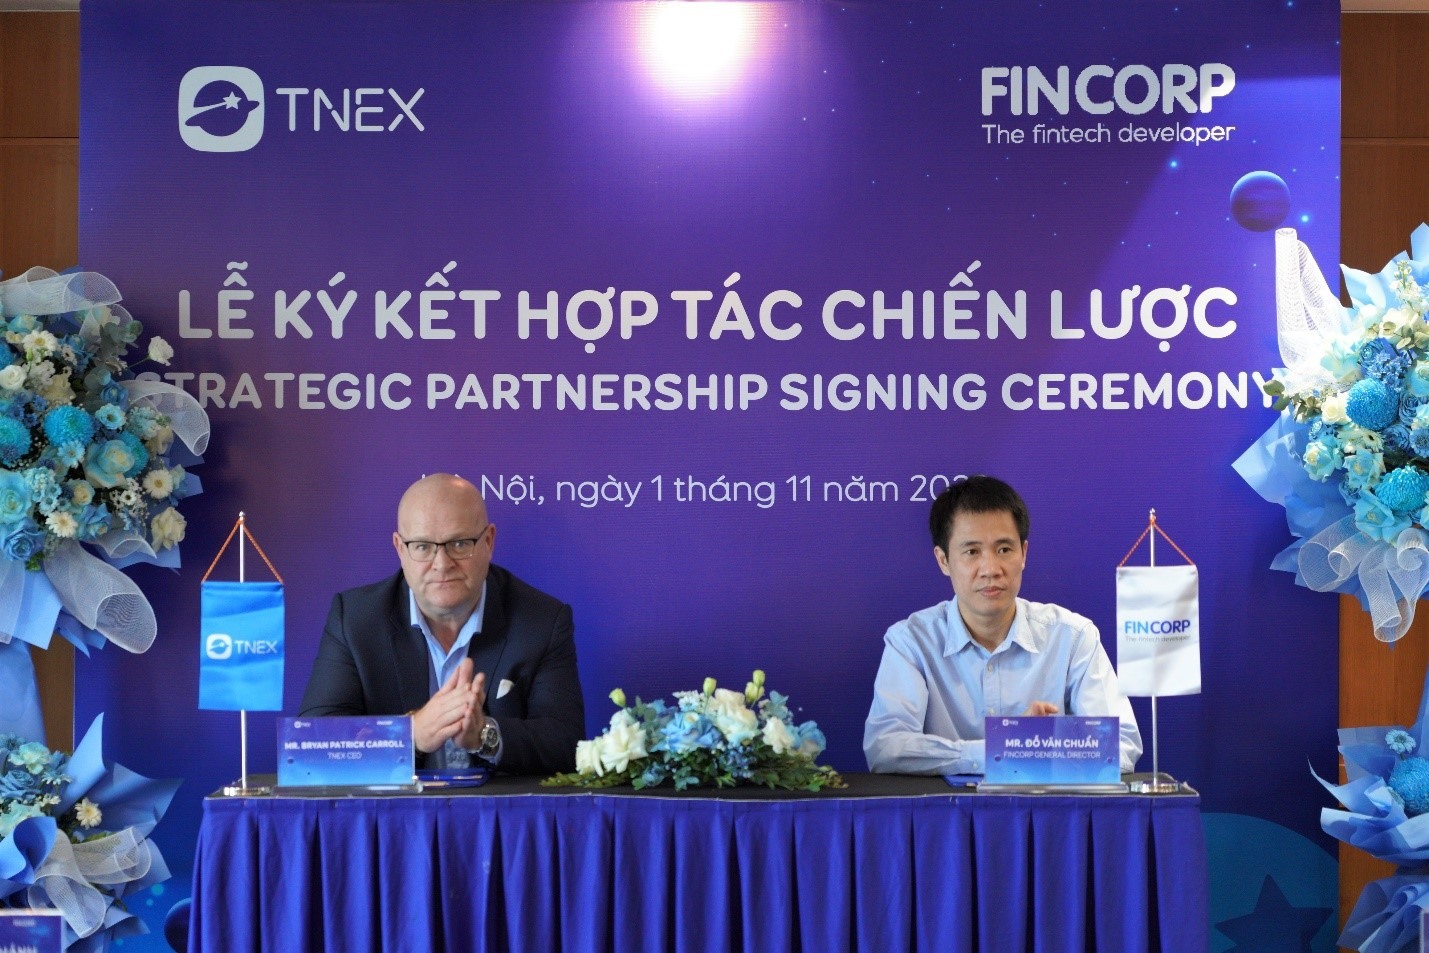 TNEX hợp tác cùng FinCorp mang tới cơ hội đầu tư bắt đầu từ 10.000 đồng